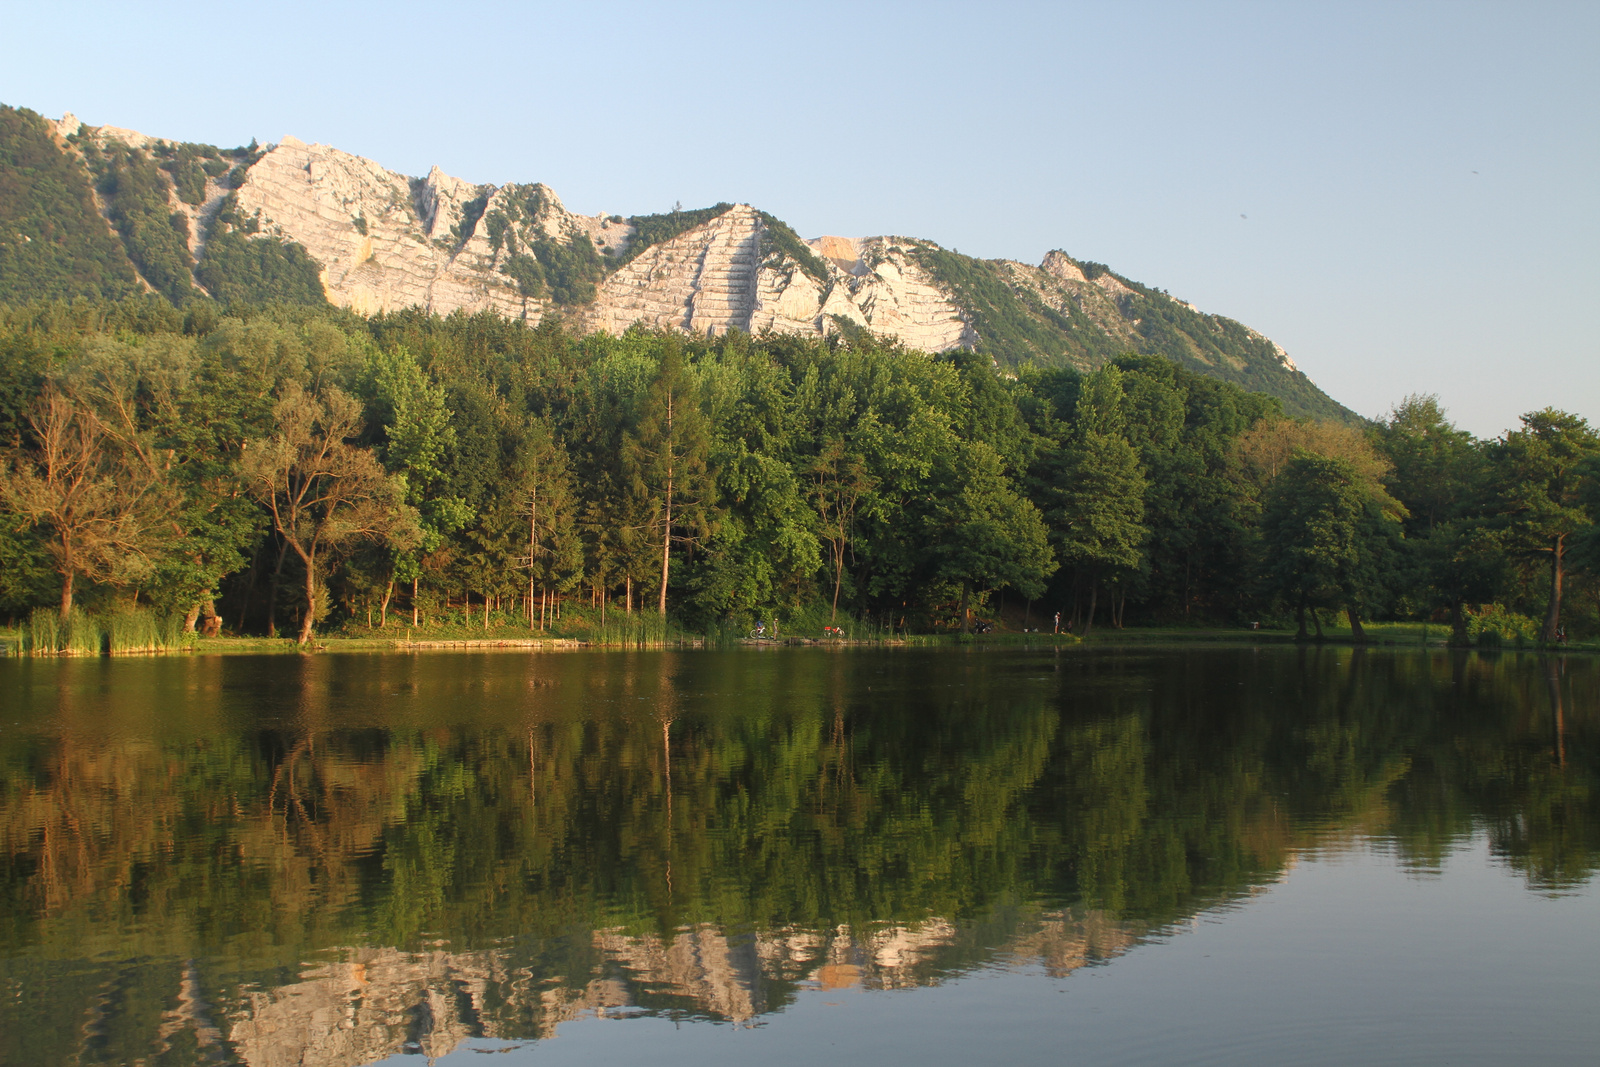 Lak-völgyi tó Bélapátfalva kimart hegyével